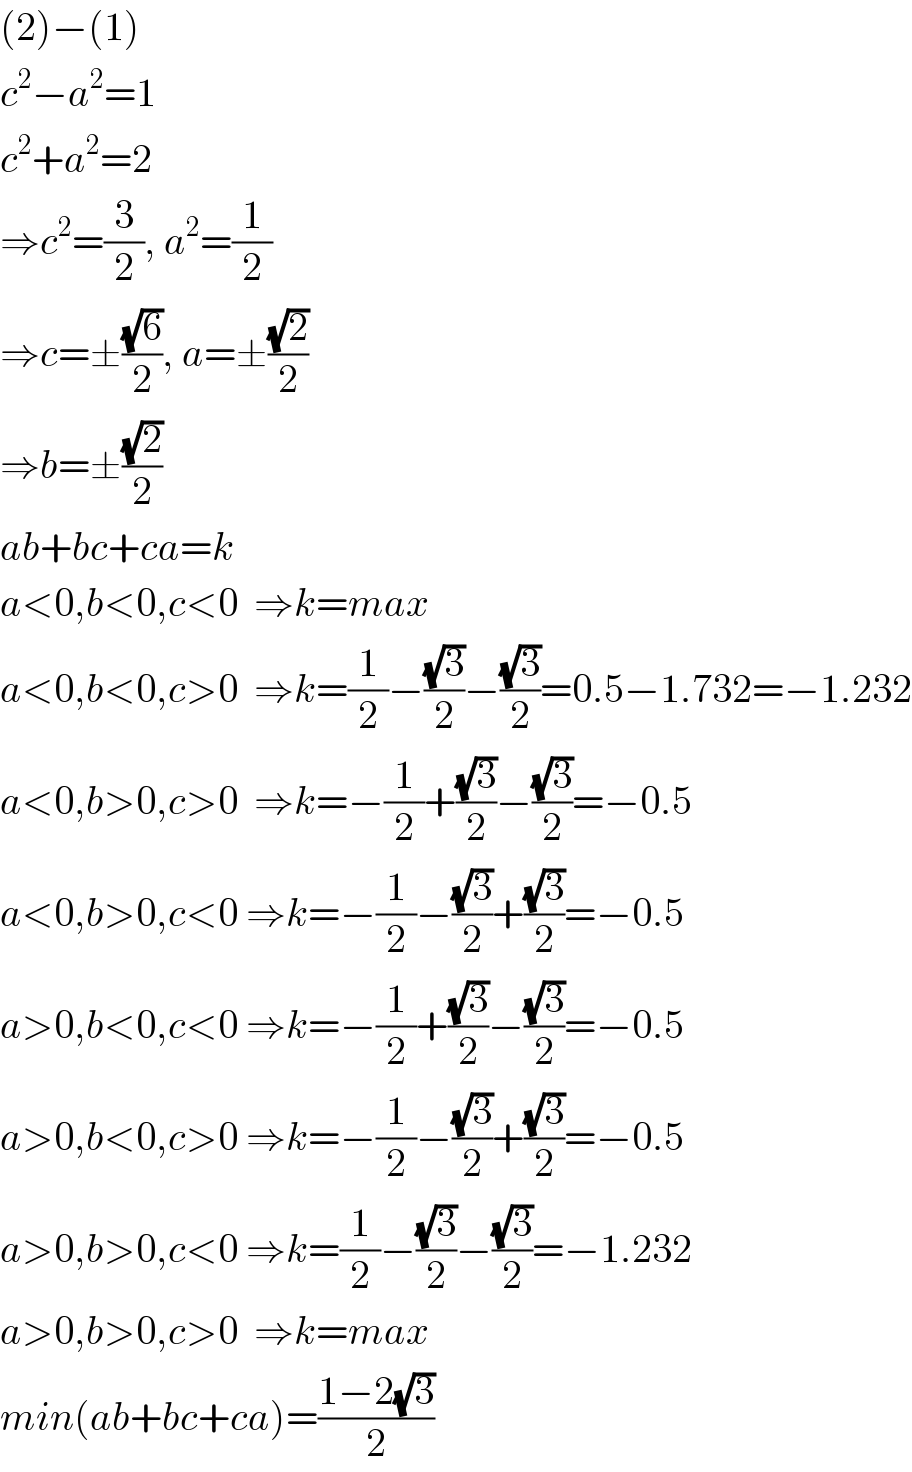 (2)−(1)  c^2 −a^2 =1  c^2 +a^2 =2  ⇒c^2 =(3/2), a^2 =(1/2)  ⇒c=±((√6)/2), a=±((√2)/2)  ⇒b=±((√2)/2)  ab+bc+ca=k  a<0,b<0,c<0  ⇒k=max  a<0,b<0,c>0  ⇒k=(1/2)−((√3)/2)−((√3)/2)=0.5−1.732=−1.232  a<0,b>0,c>0  ⇒k=−(1/2)+((√3)/2)−((√3)/2)=−0.5  a<0,b>0,c<0 ⇒k=−(1/2)−((√3)/2)+((√3)/2)=−0.5  a>0,b<0,c<0 ⇒k=−(1/2)+((√3)/2)−((√3)/2)=−0.5  a>0,b<0,c>0 ⇒k=−(1/2)−((√3)/2)+((√3)/2)=−0.5  a>0,b>0,c<0 ⇒k=(1/2)−((√3)/2)−((√3)/2)=−1.232  a>0,b>0,c>0  ⇒k=max  min(ab+bc+ca)=((1−2(√3))/2)  